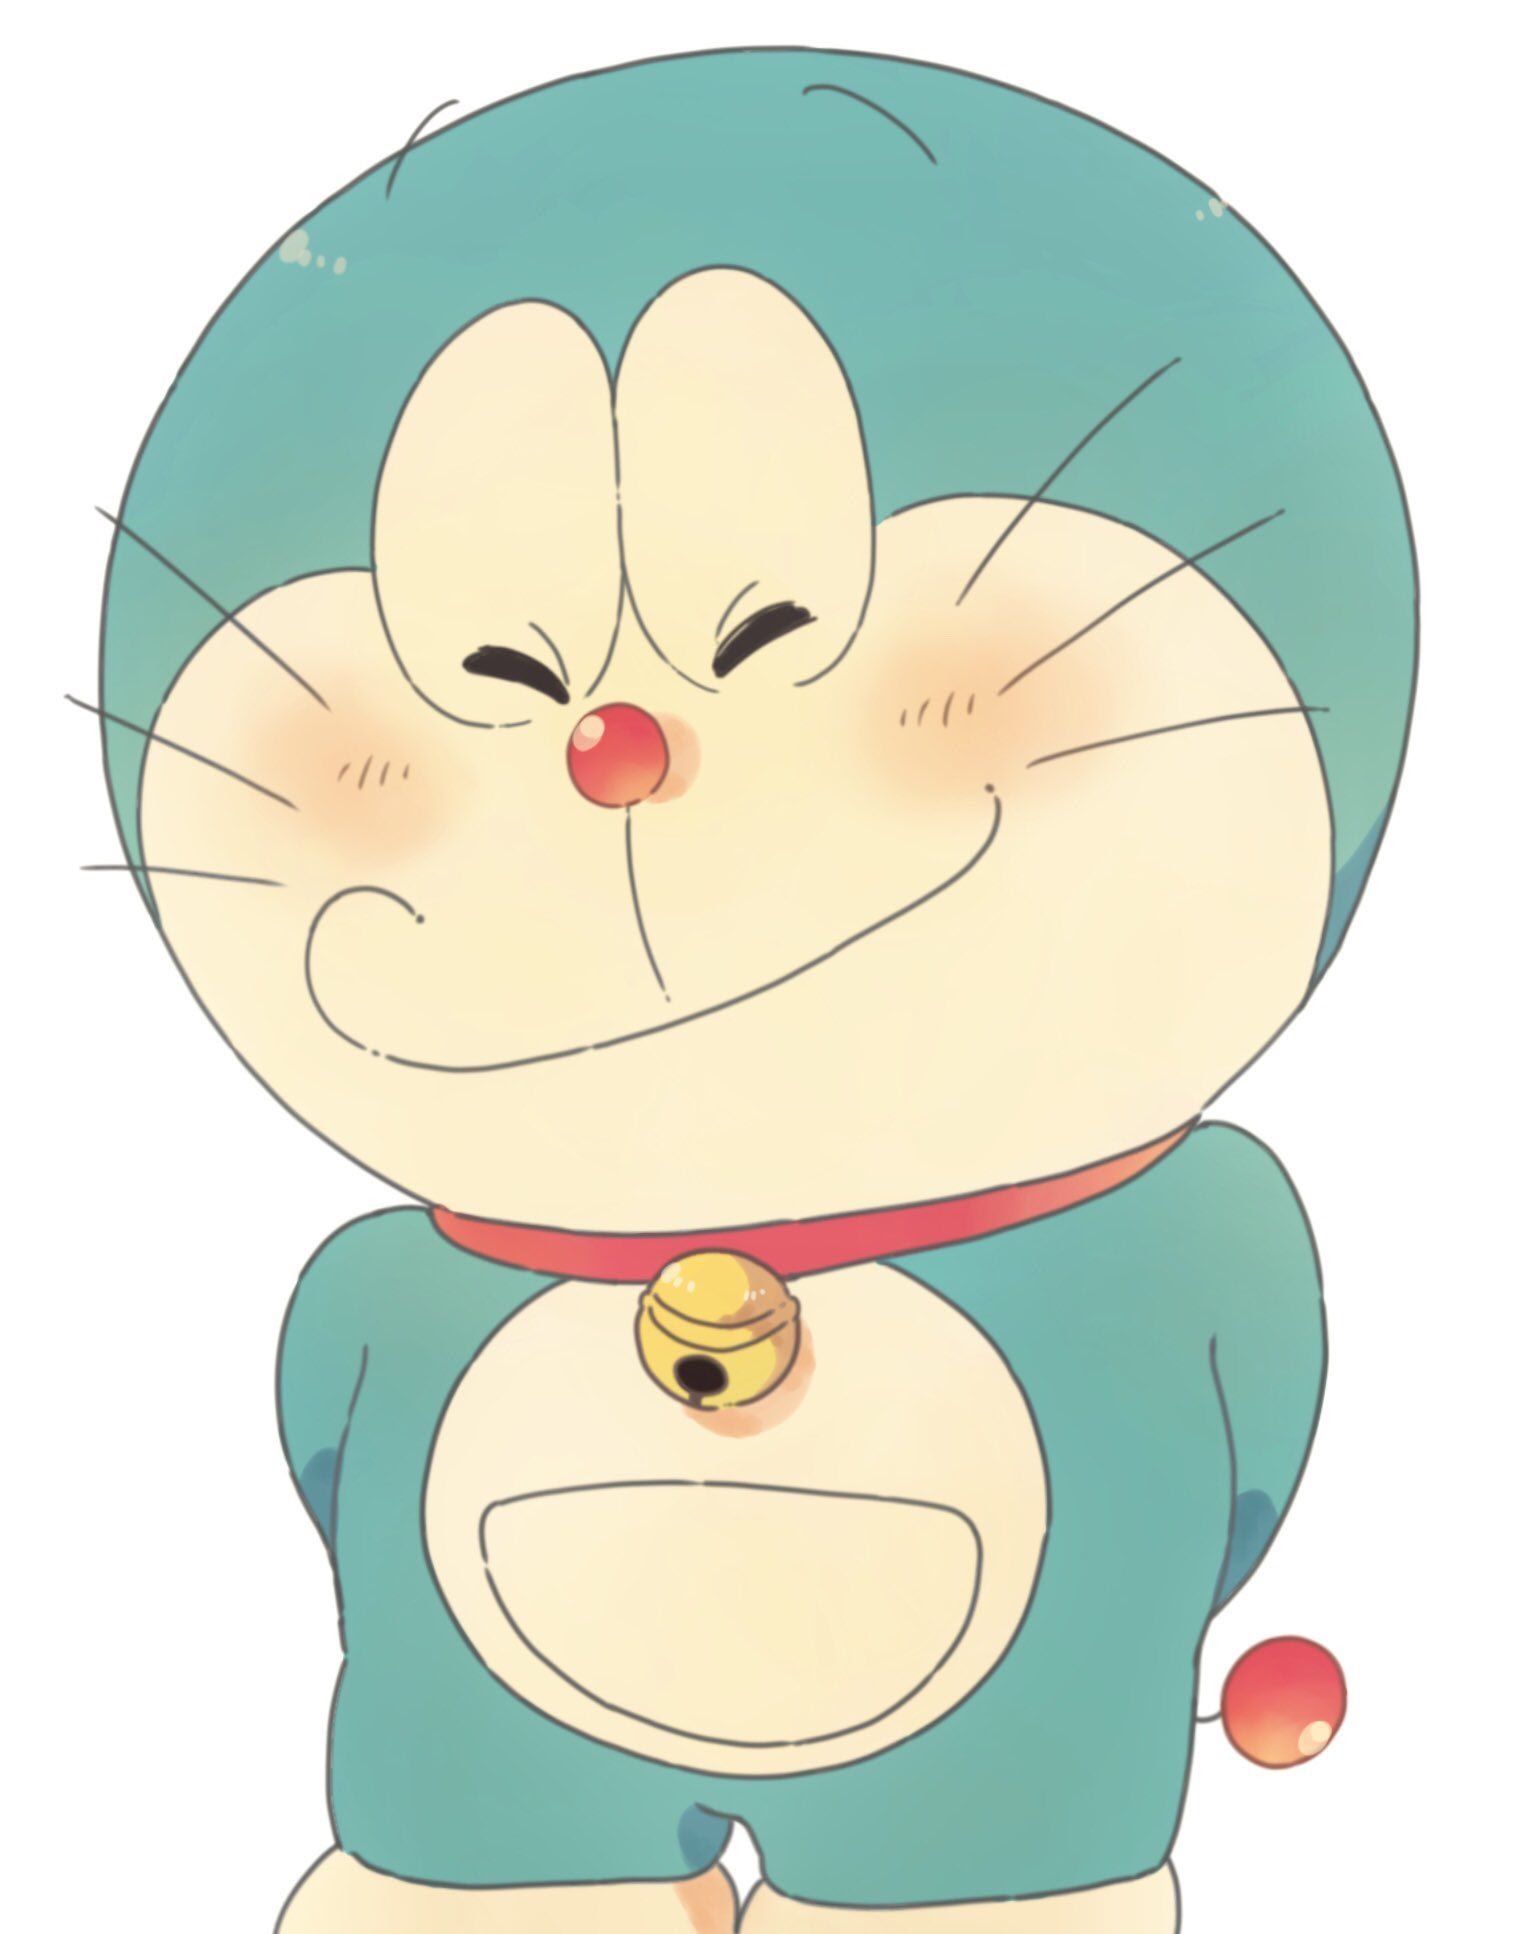 Doraemon không chỉ là một nhân vật hoạt hình thông thường. Bạn sẽ bất ngờ khi biết được những sự thật thú vị về chú mèo máy này. Hãy xem hình ảnh này để khám phá thế giới đầy bí ẩn của Doraemon.